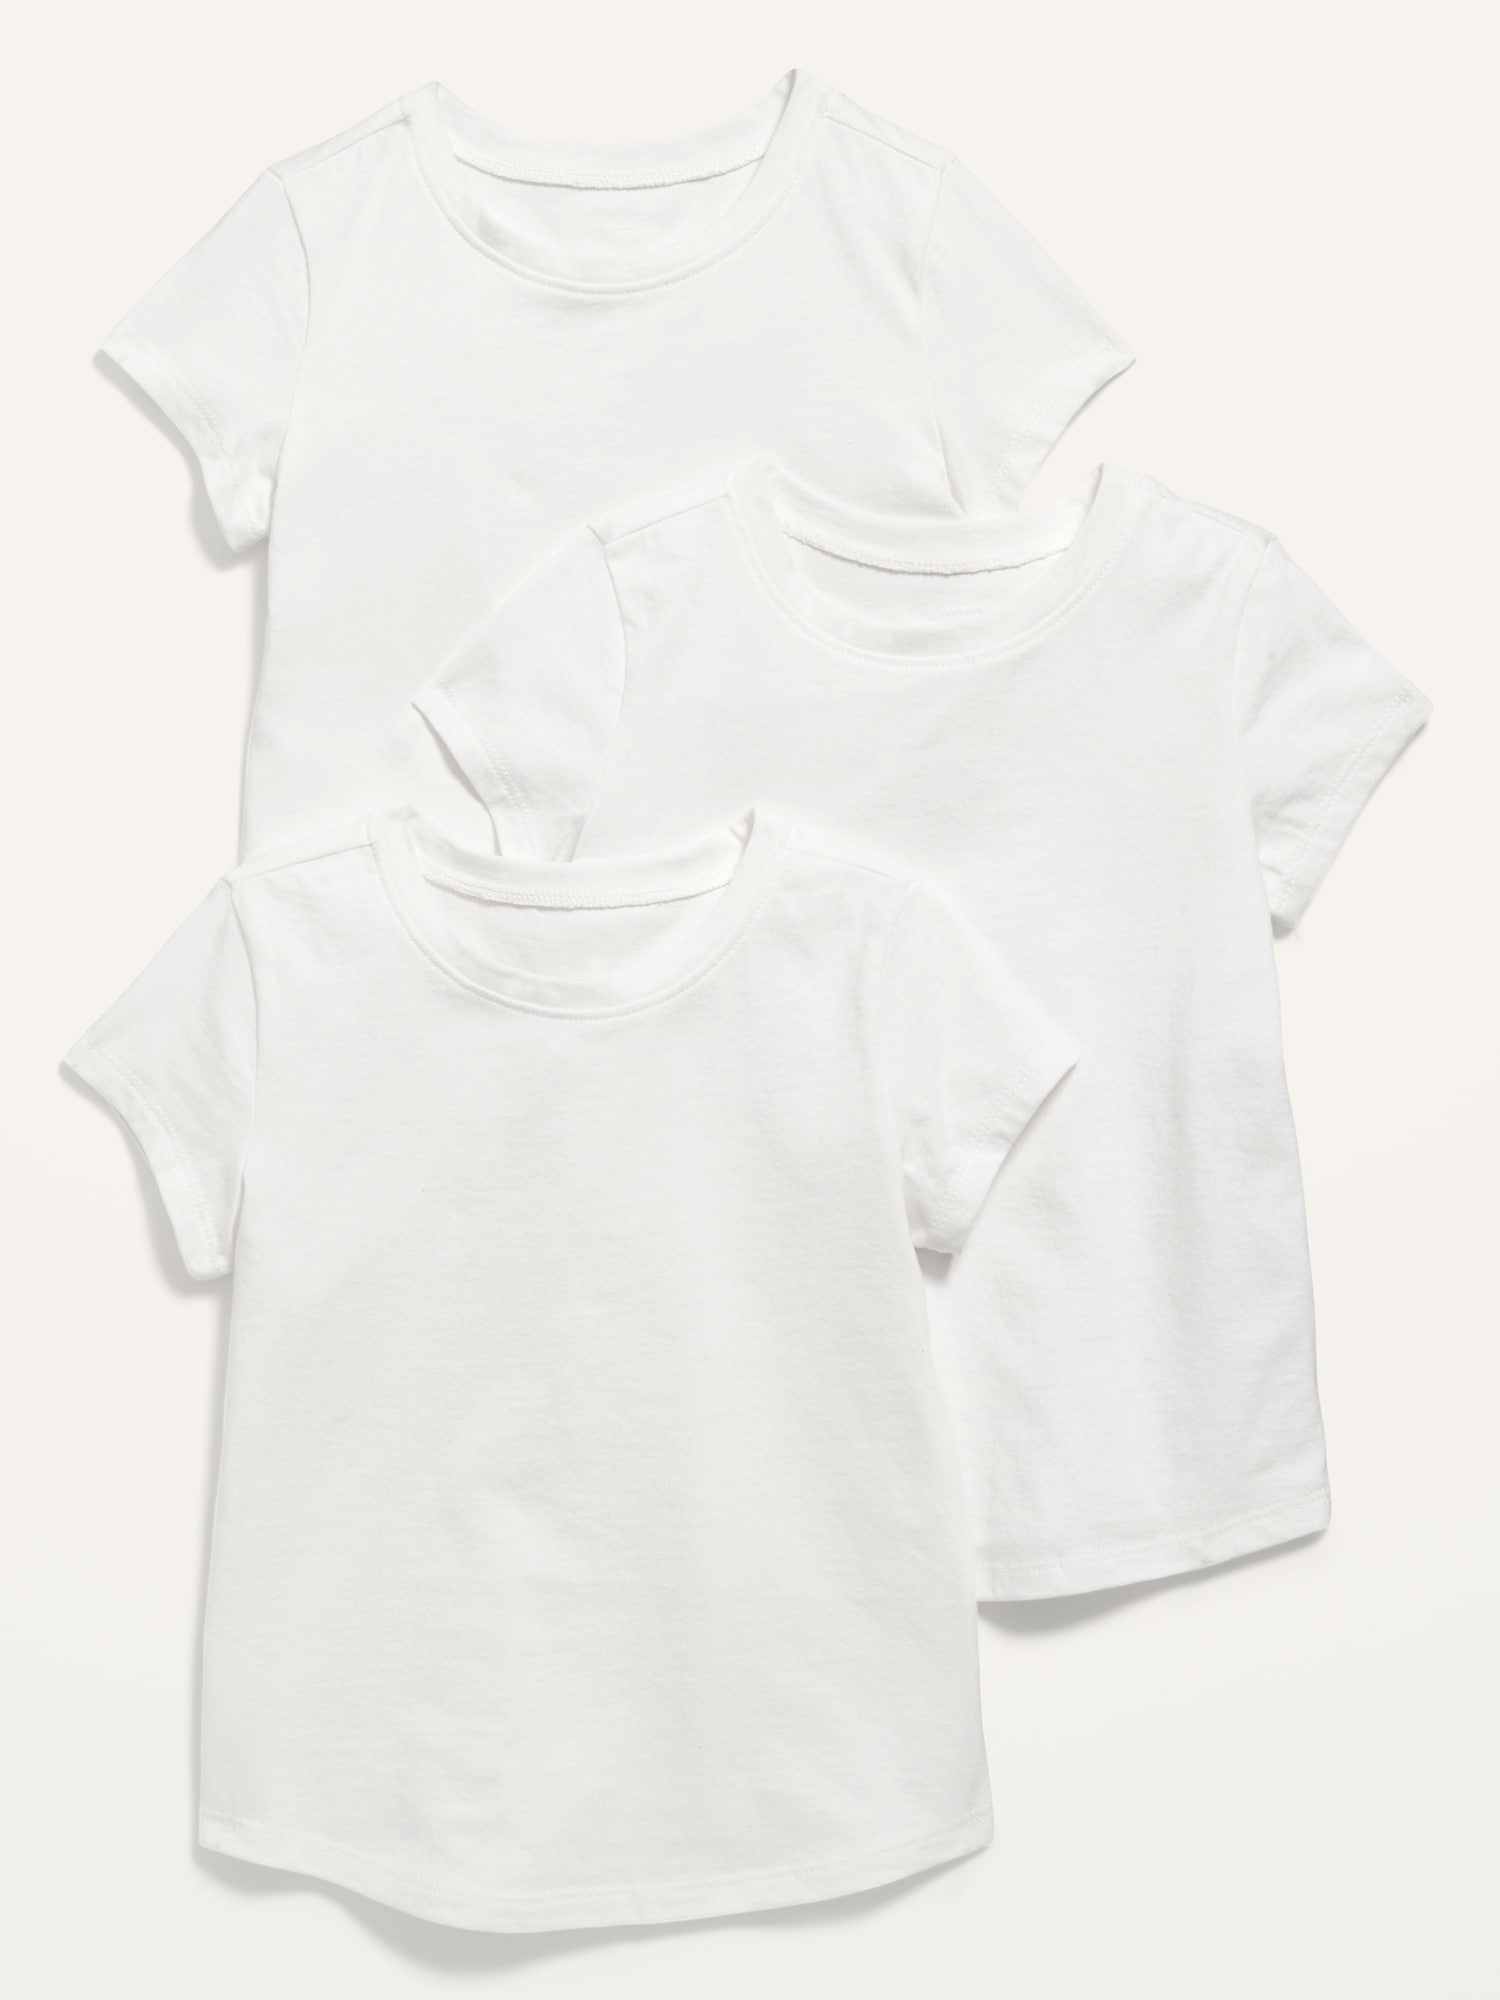 Old Navy Unisex 3-Pack Long & Lean Short-Sleeve T-Shirt for Toddler white. 1